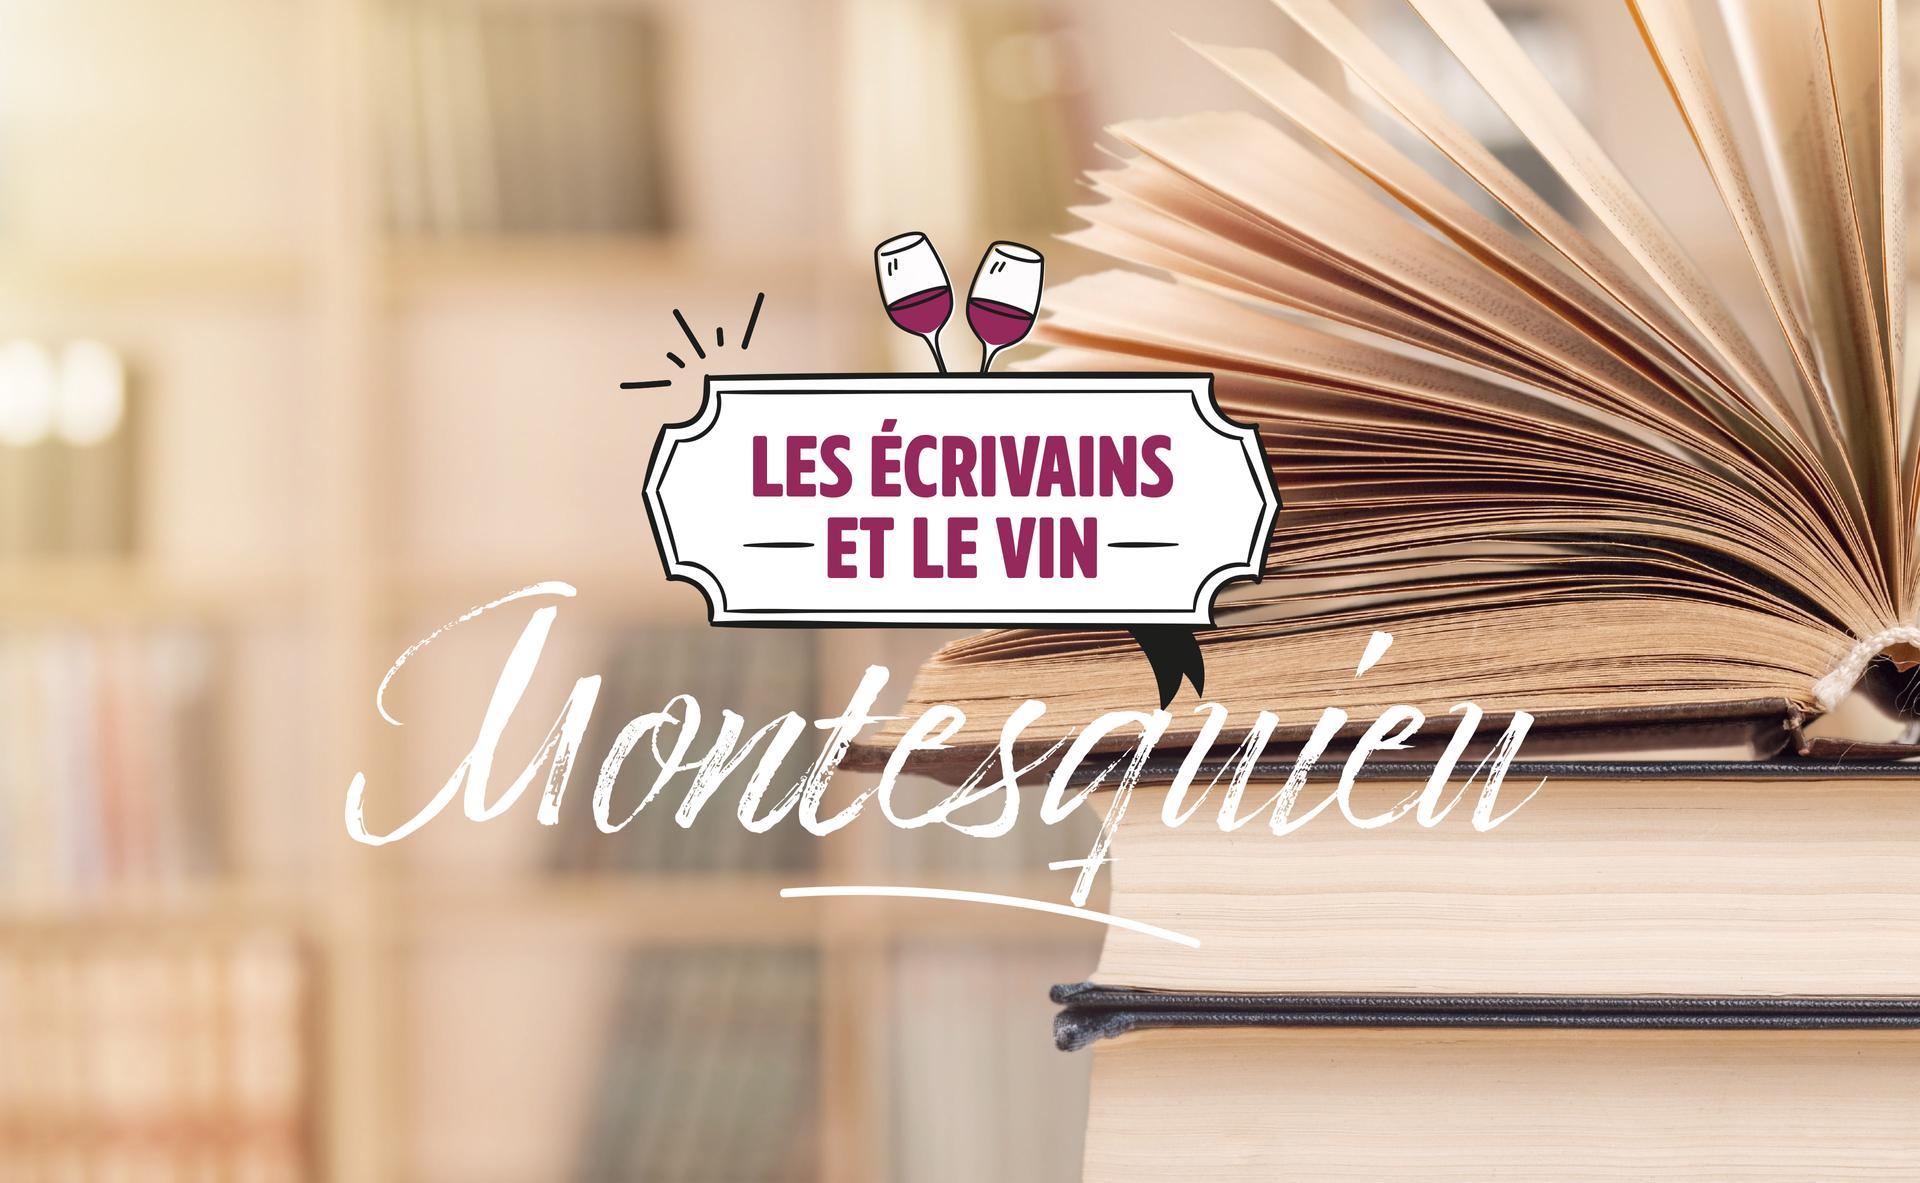 Les écrivains et le vin : Montesquieu, le vigneron philosophe